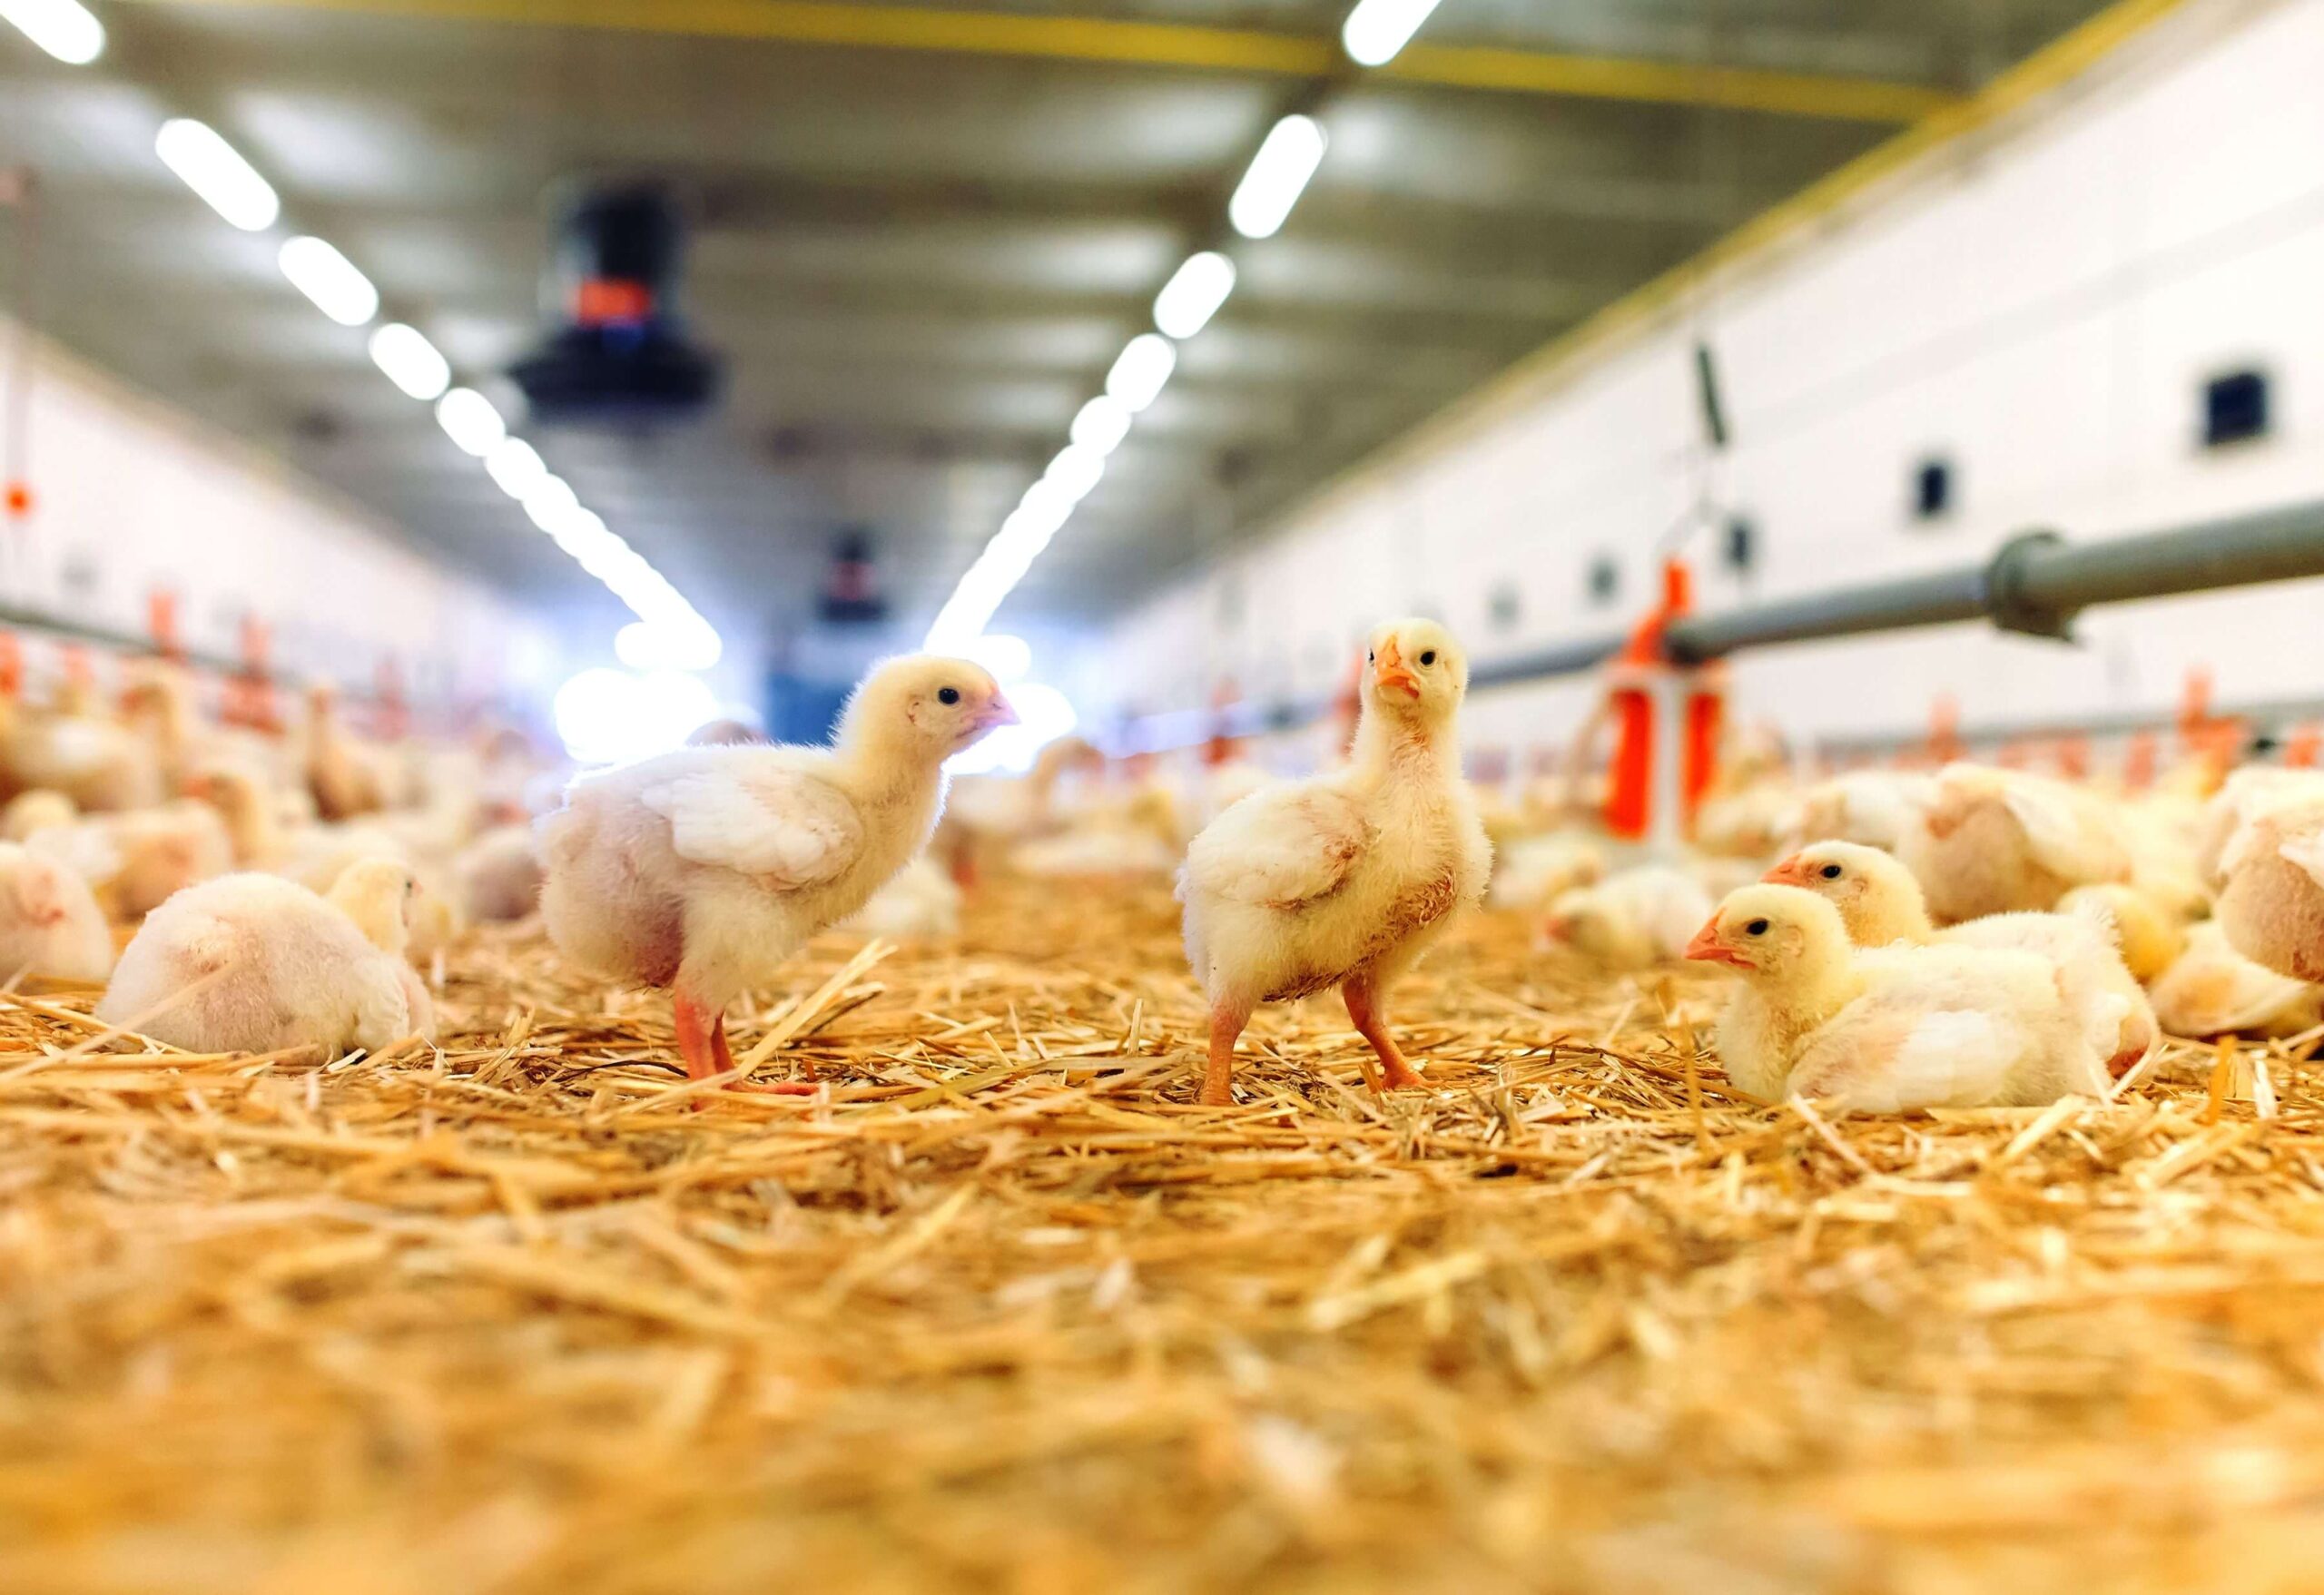 سیستم های خنک کننده برای رسیدن به بیشترین بهره وری در تخم گذاری مرغها